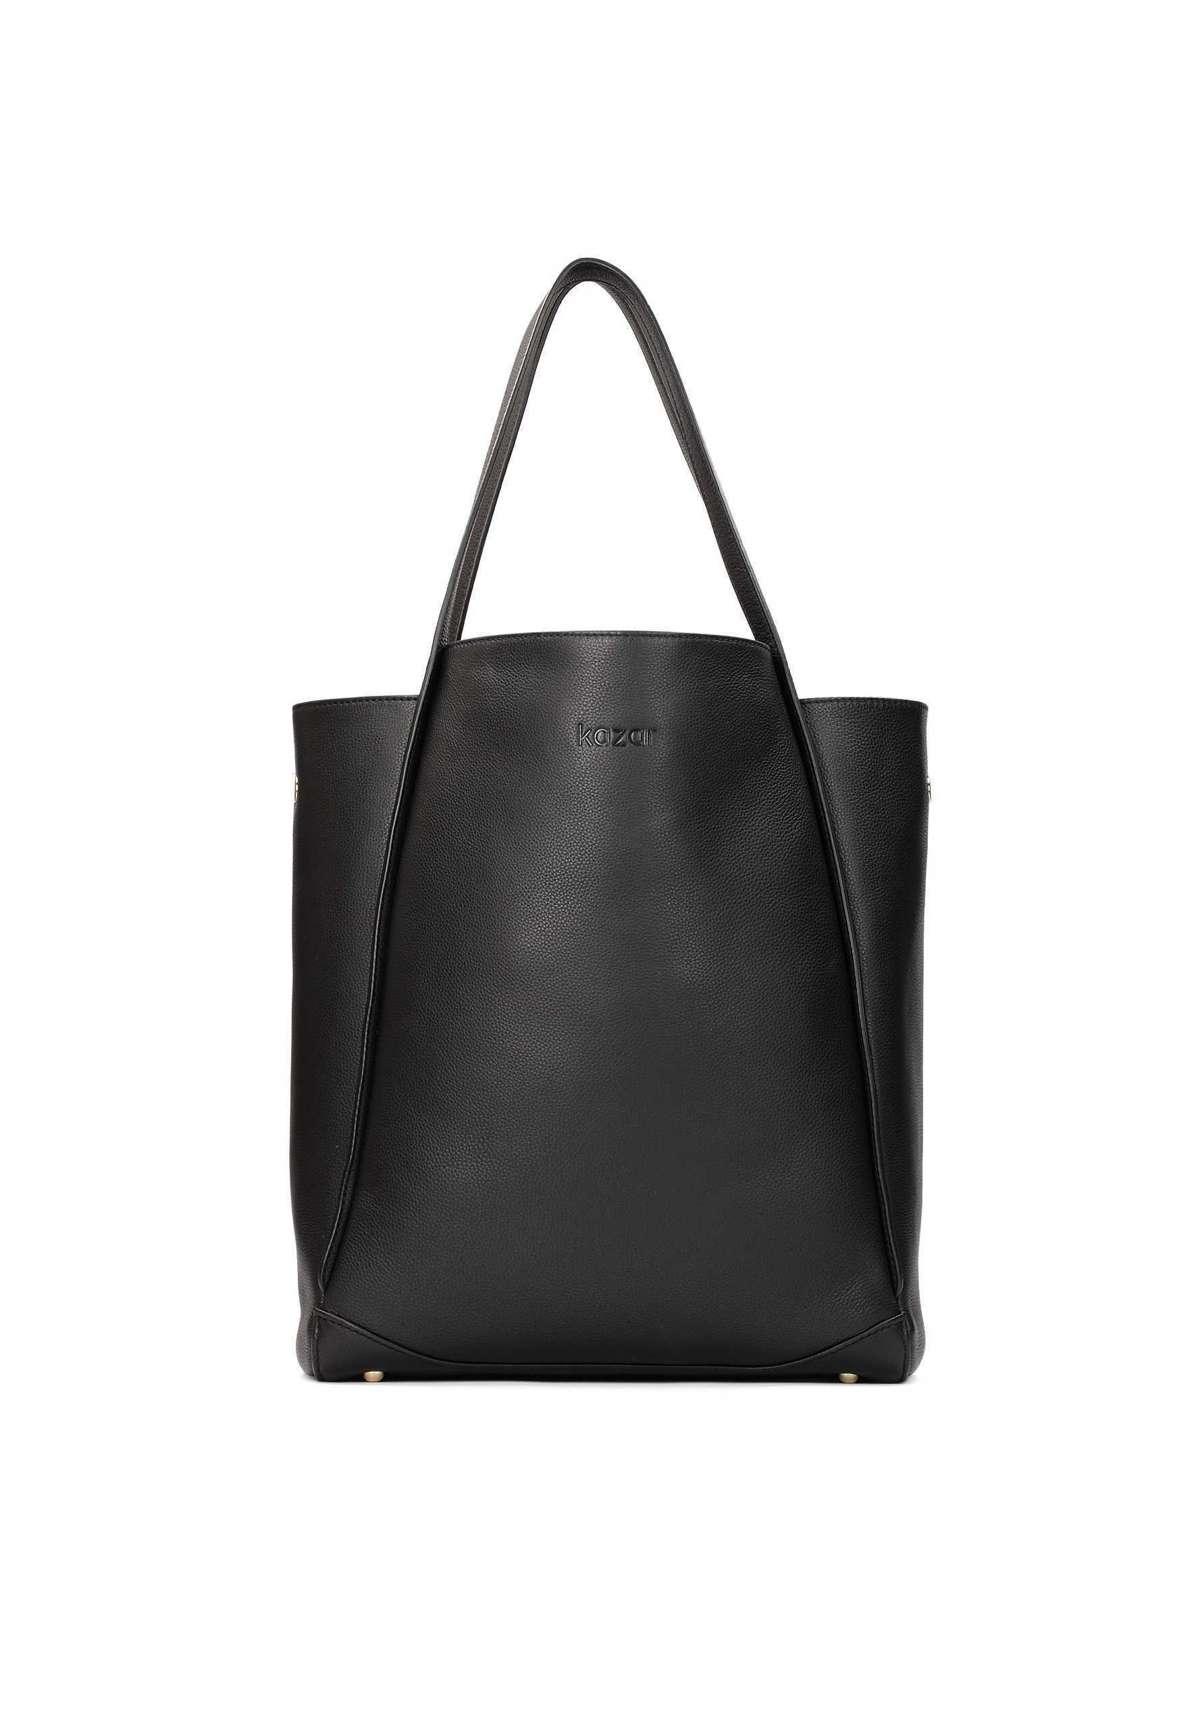 REYNA XL - Shopping Bag REYNA XL